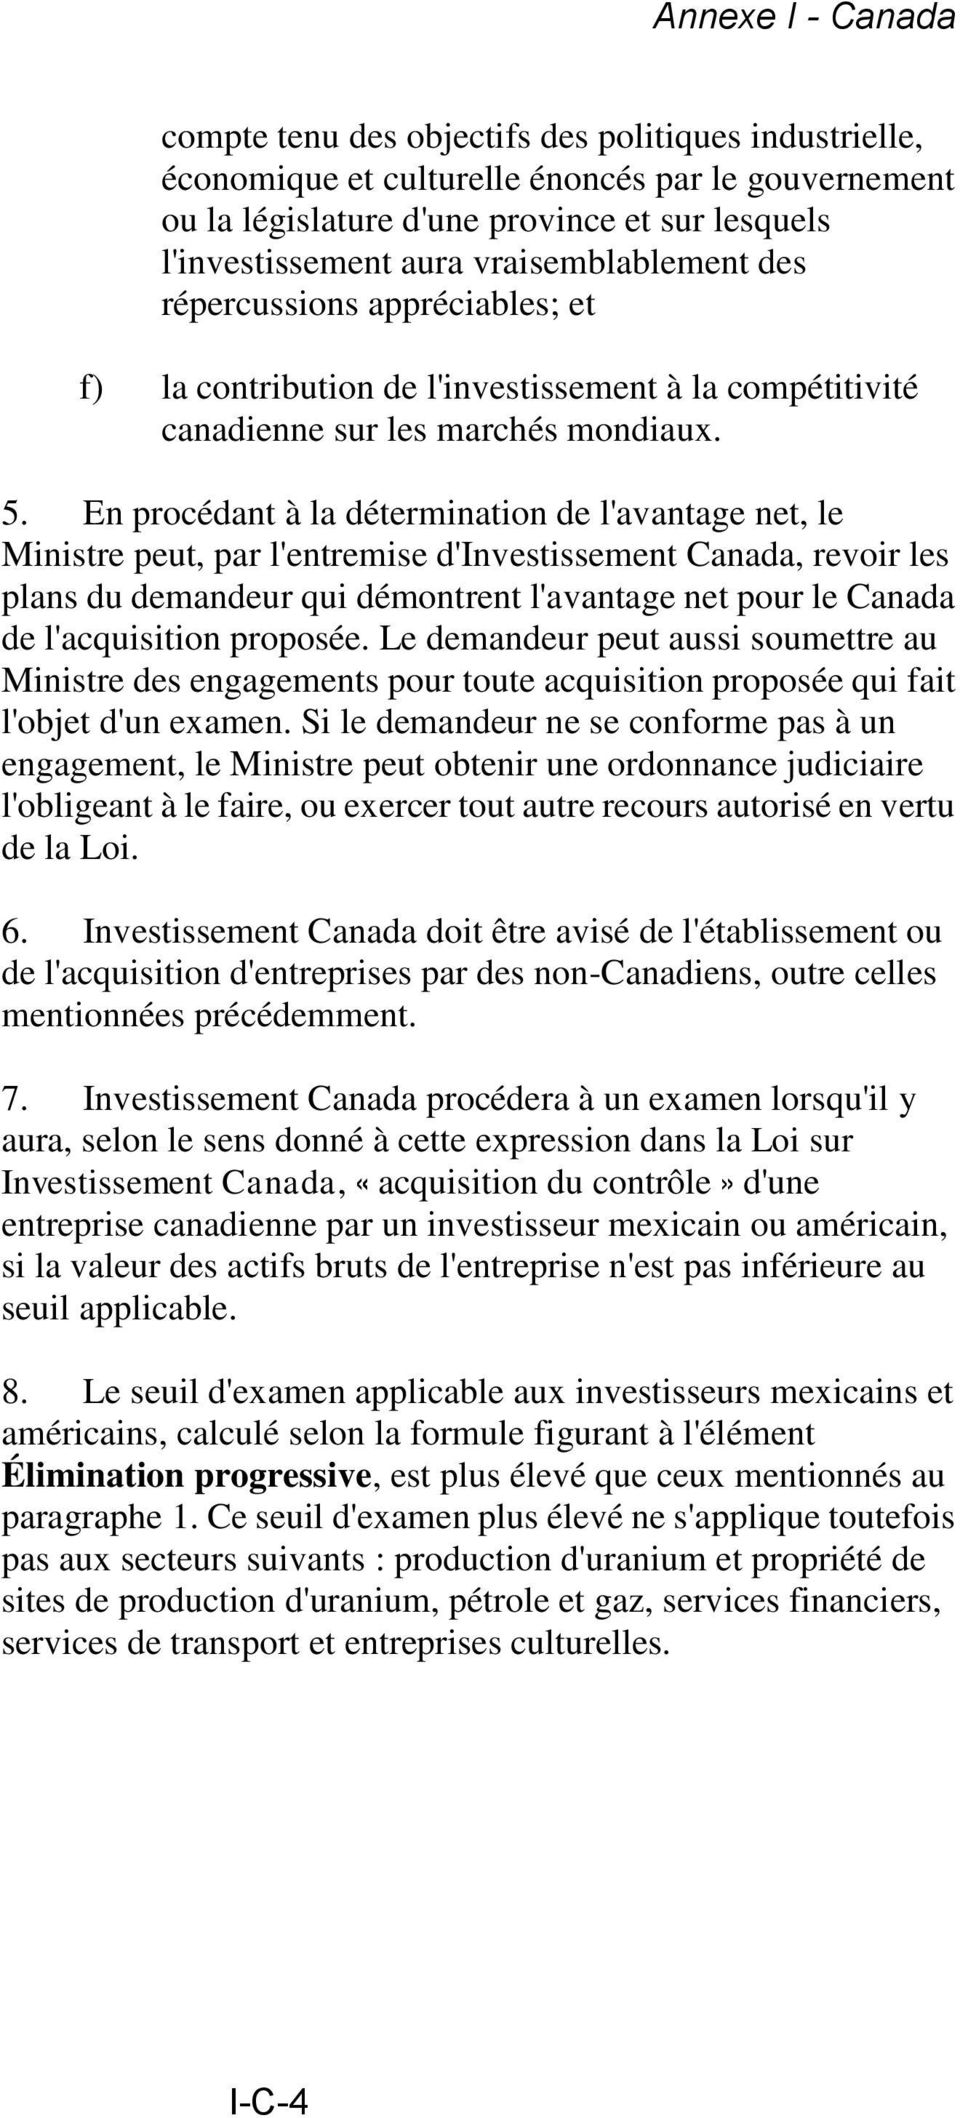 En procédant à la détermination de l'avantage net, le Ministre peut, par l'entremise d'investissement Canada, revoir les plans du demandeur qui démontrent l'avantage net pour le Canada de